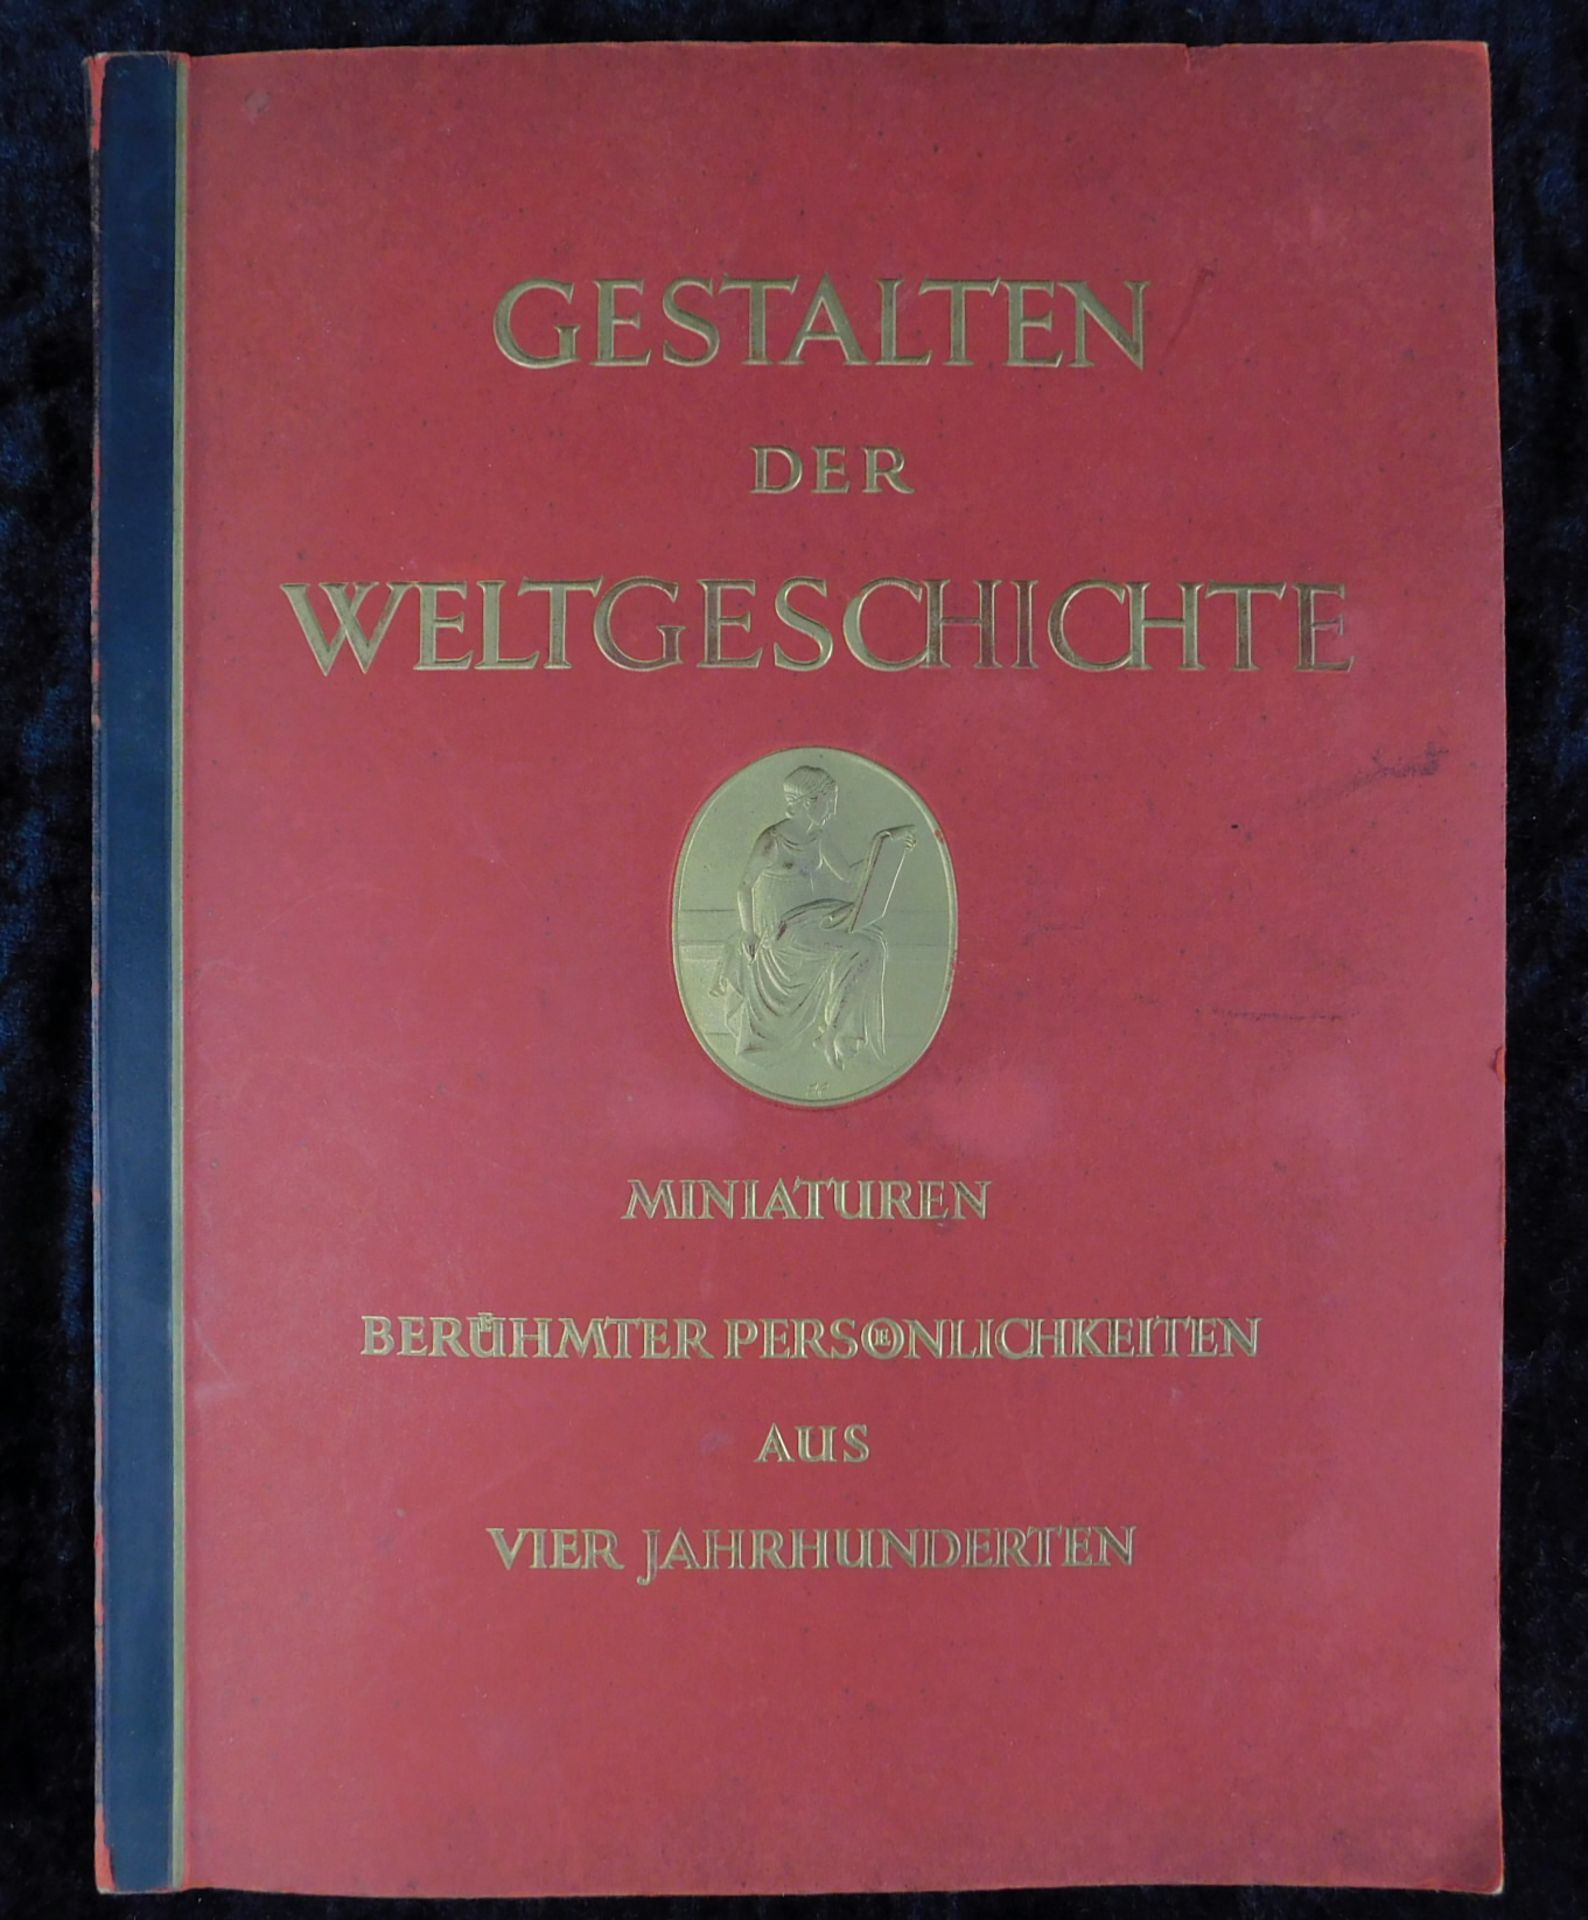 Sammelalbum gebunden "Gestalten der Weltgeschichte", 1933, Cigaretten Bilderdienst, Hamburg-Bahr - Bild 4 aus 4